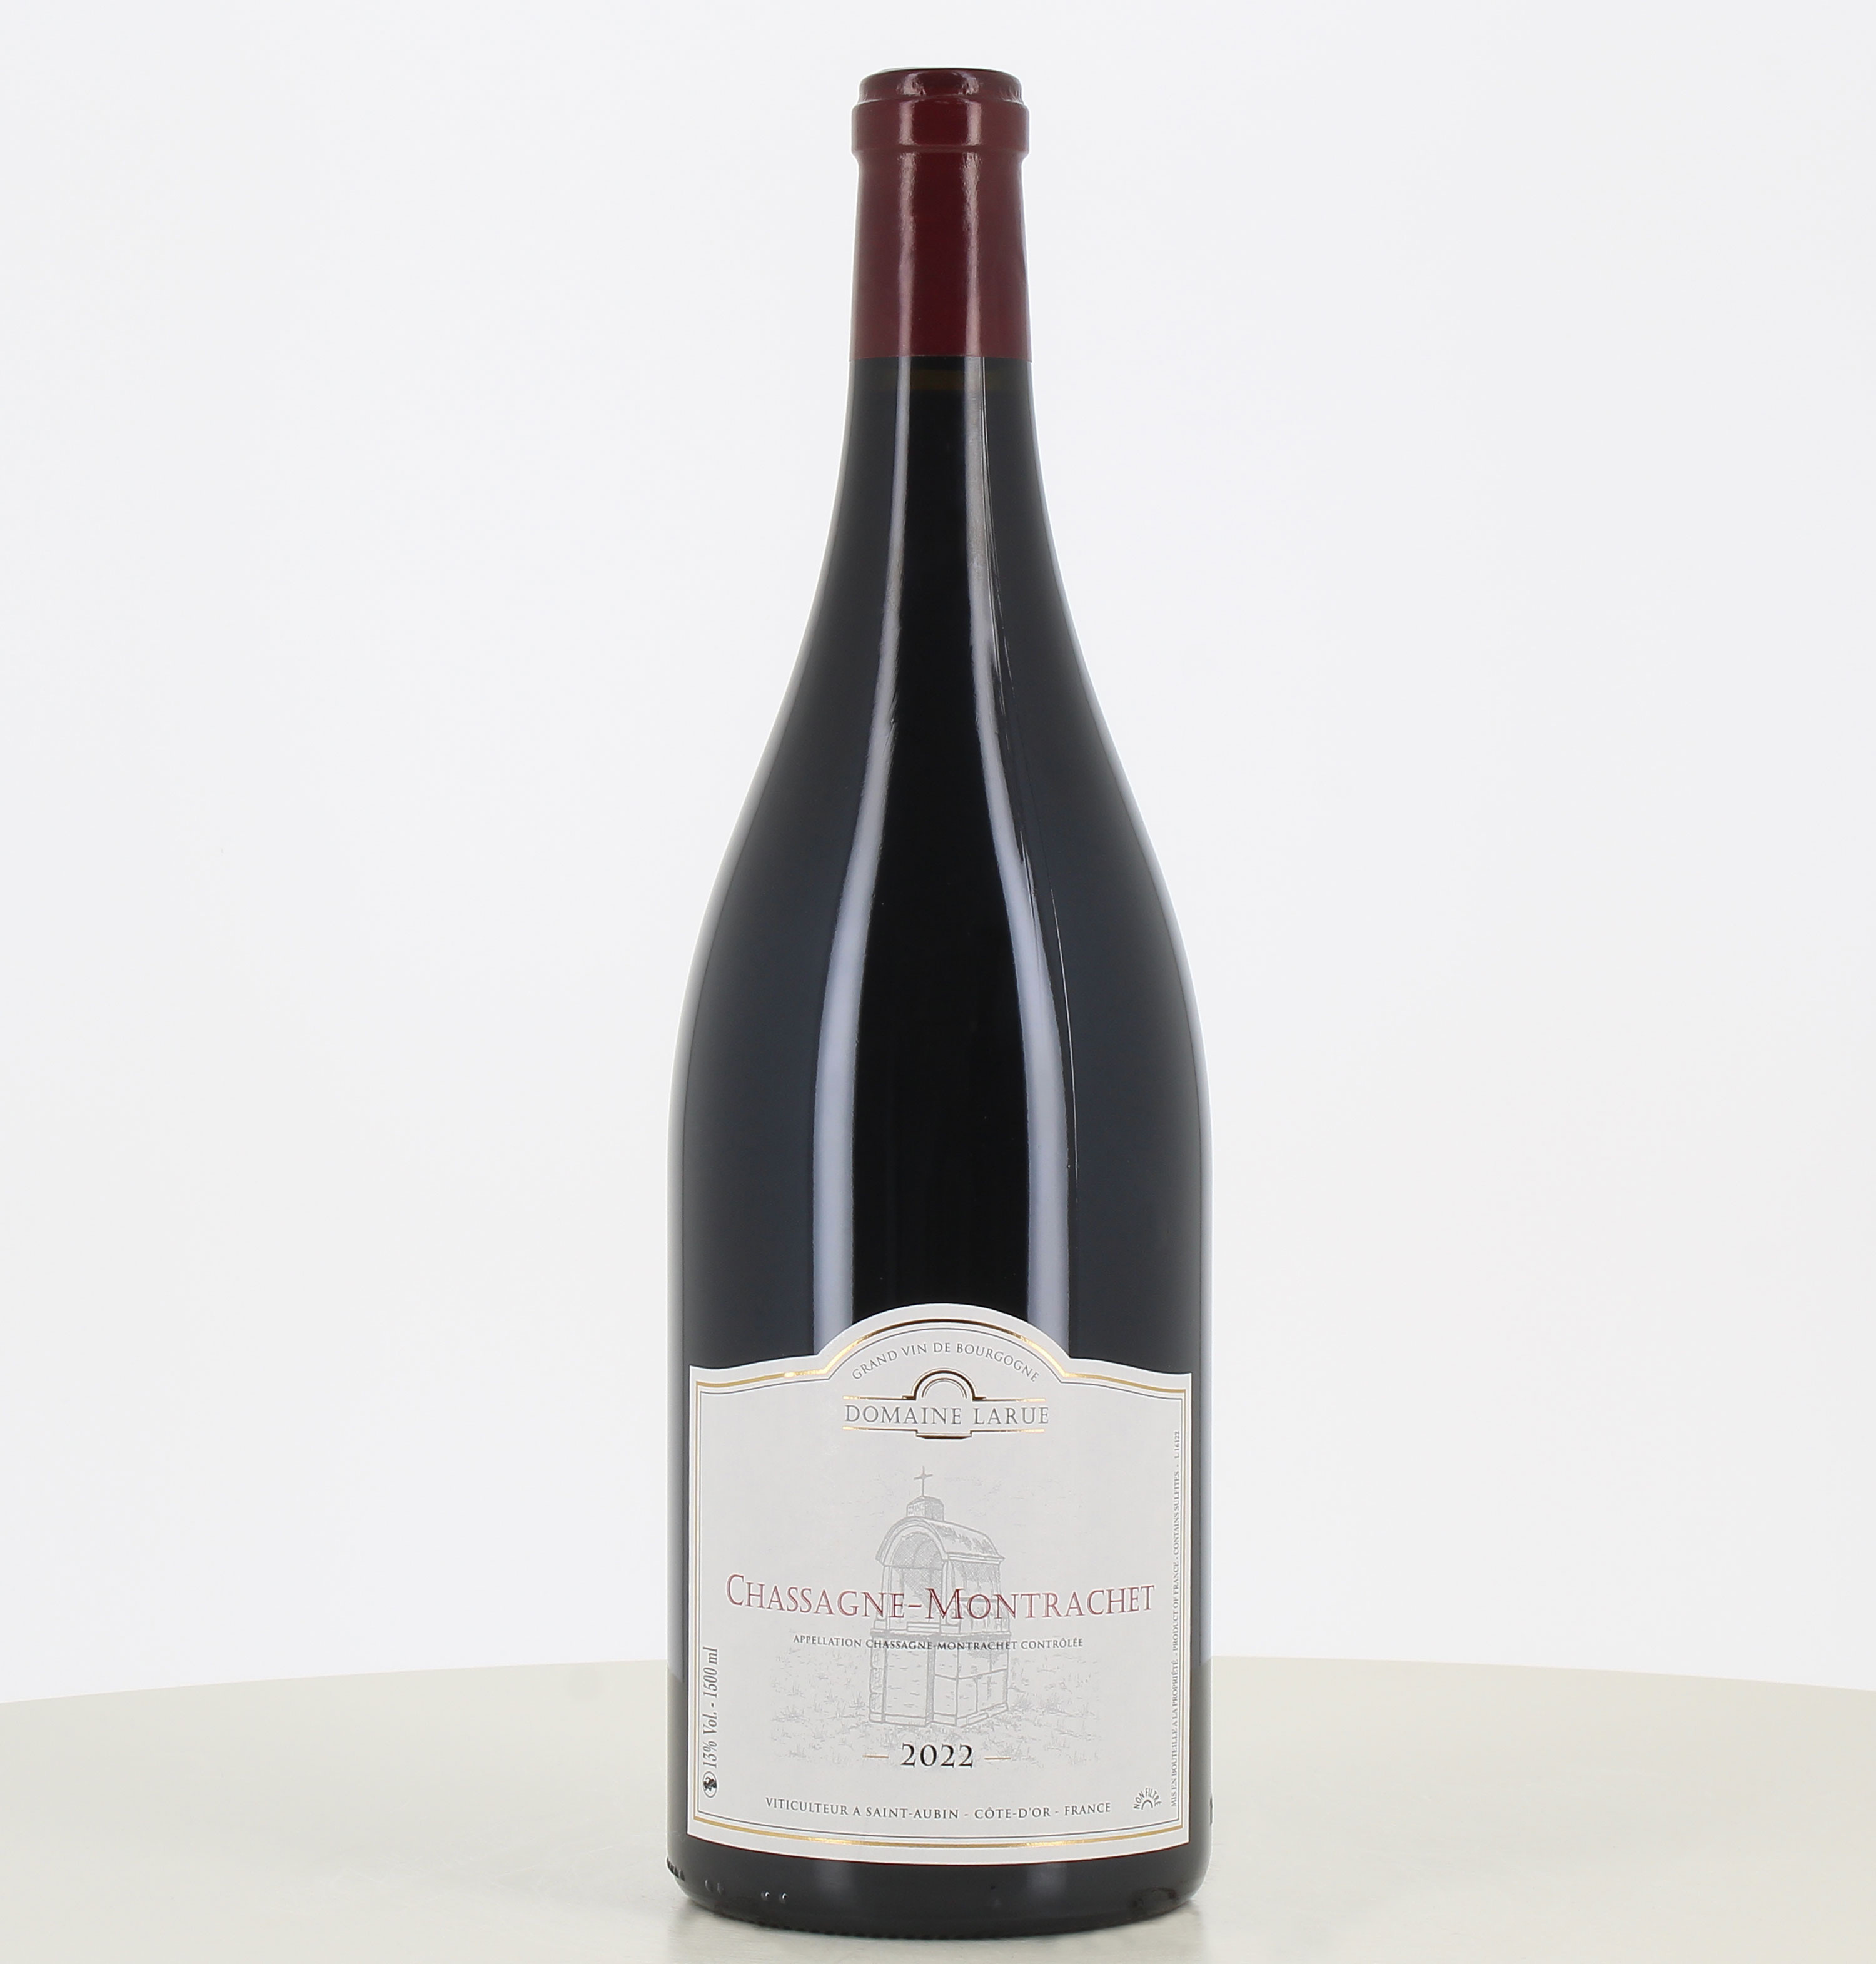 Magnum di vino rosso Chassagne-Montrachet del domaine Larue 2022. 